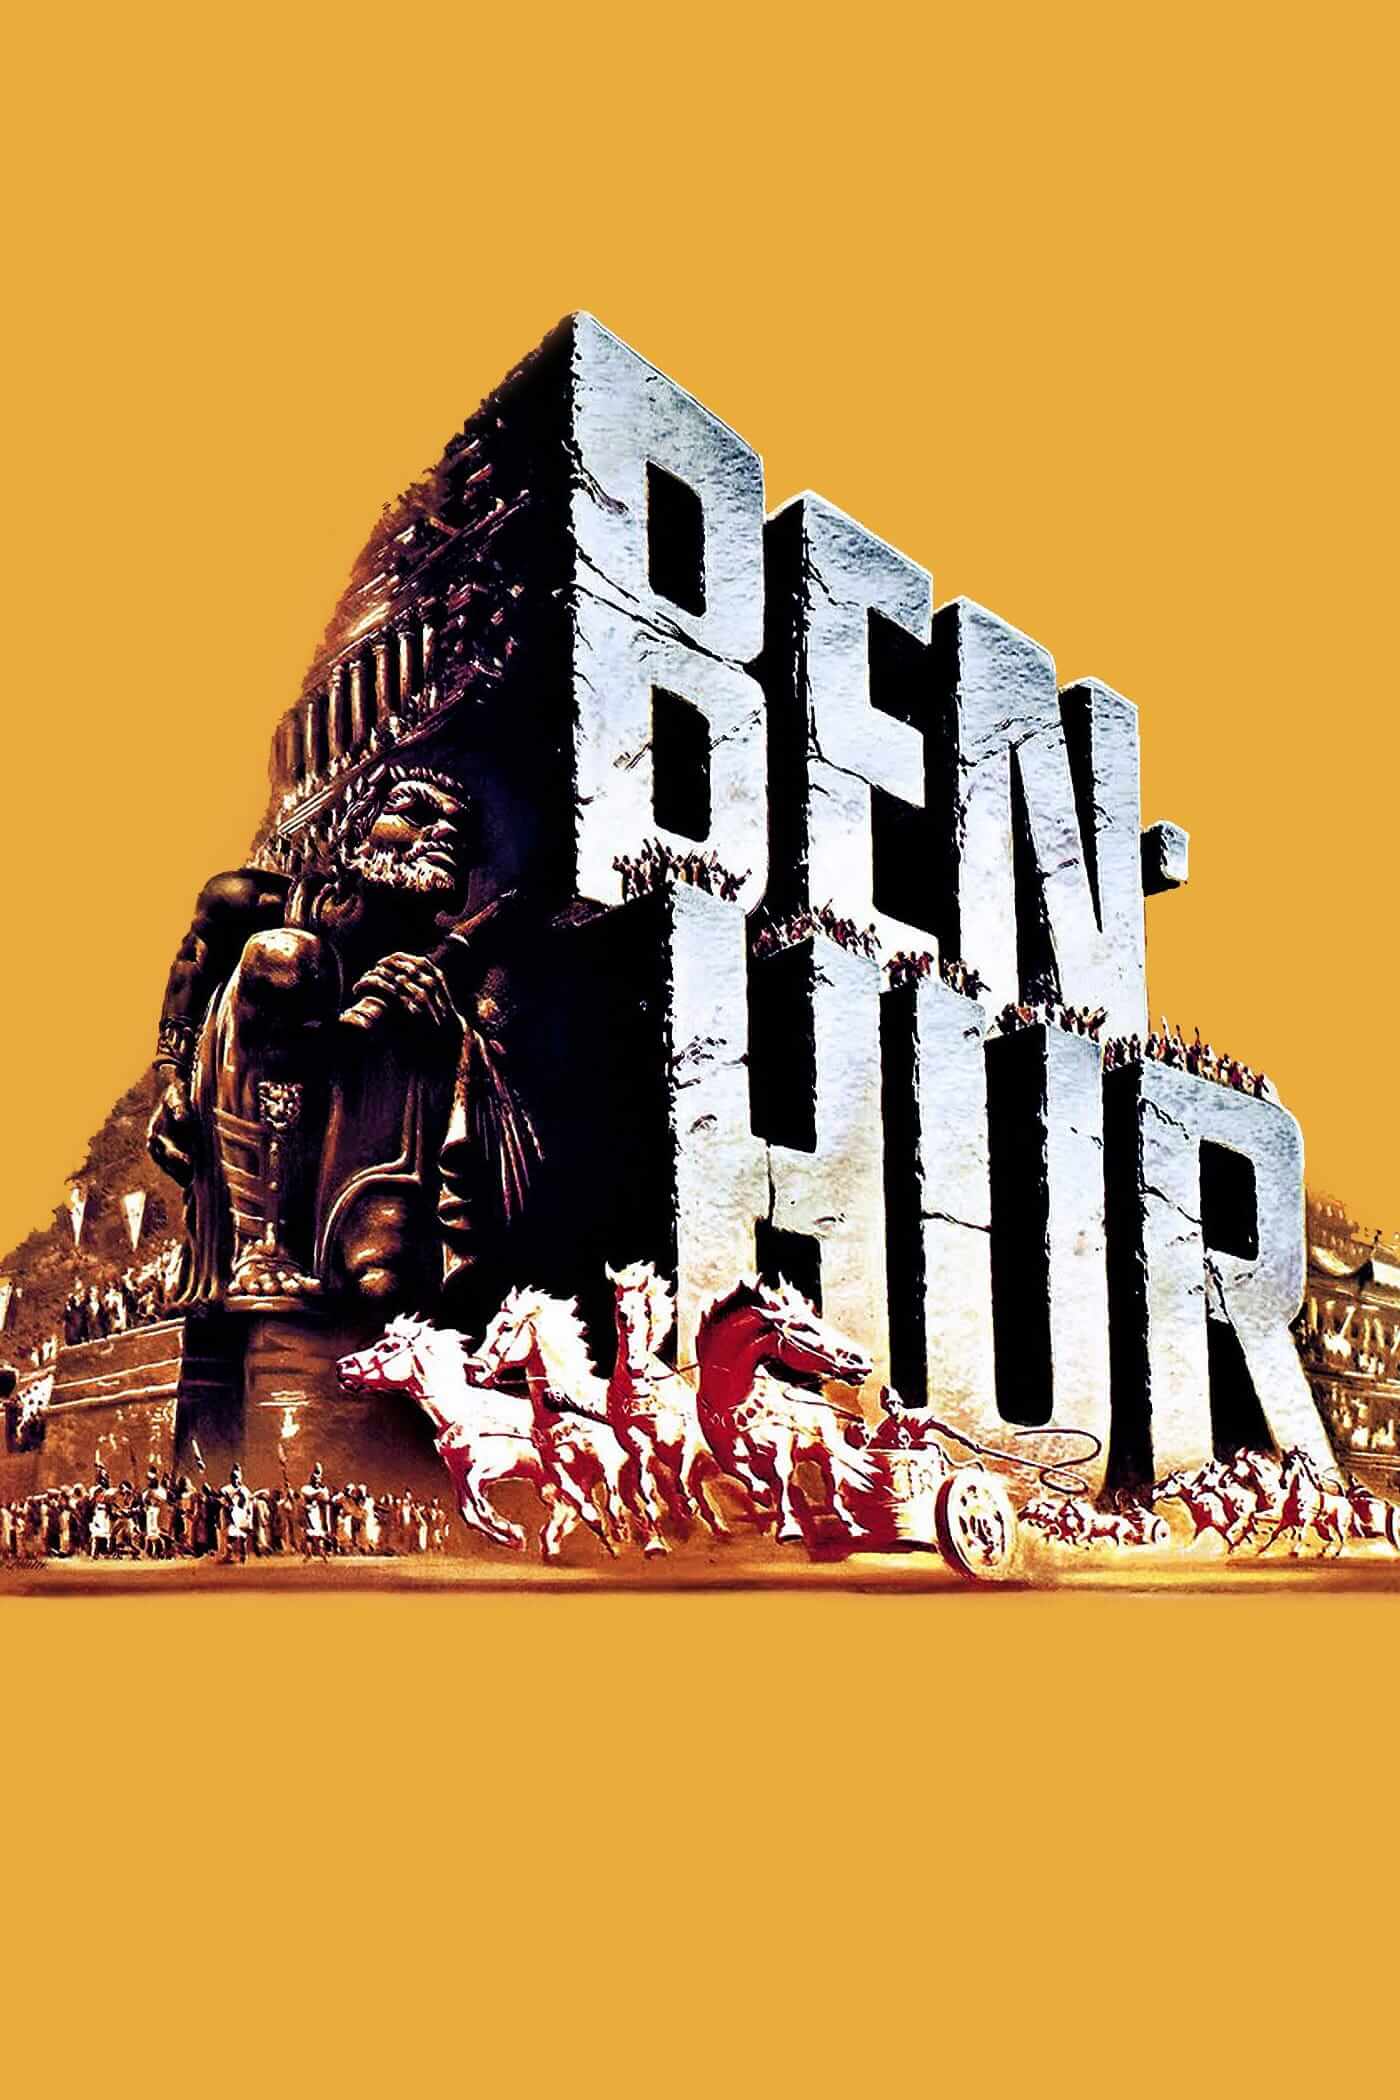 بن هور (Ben-Hur)